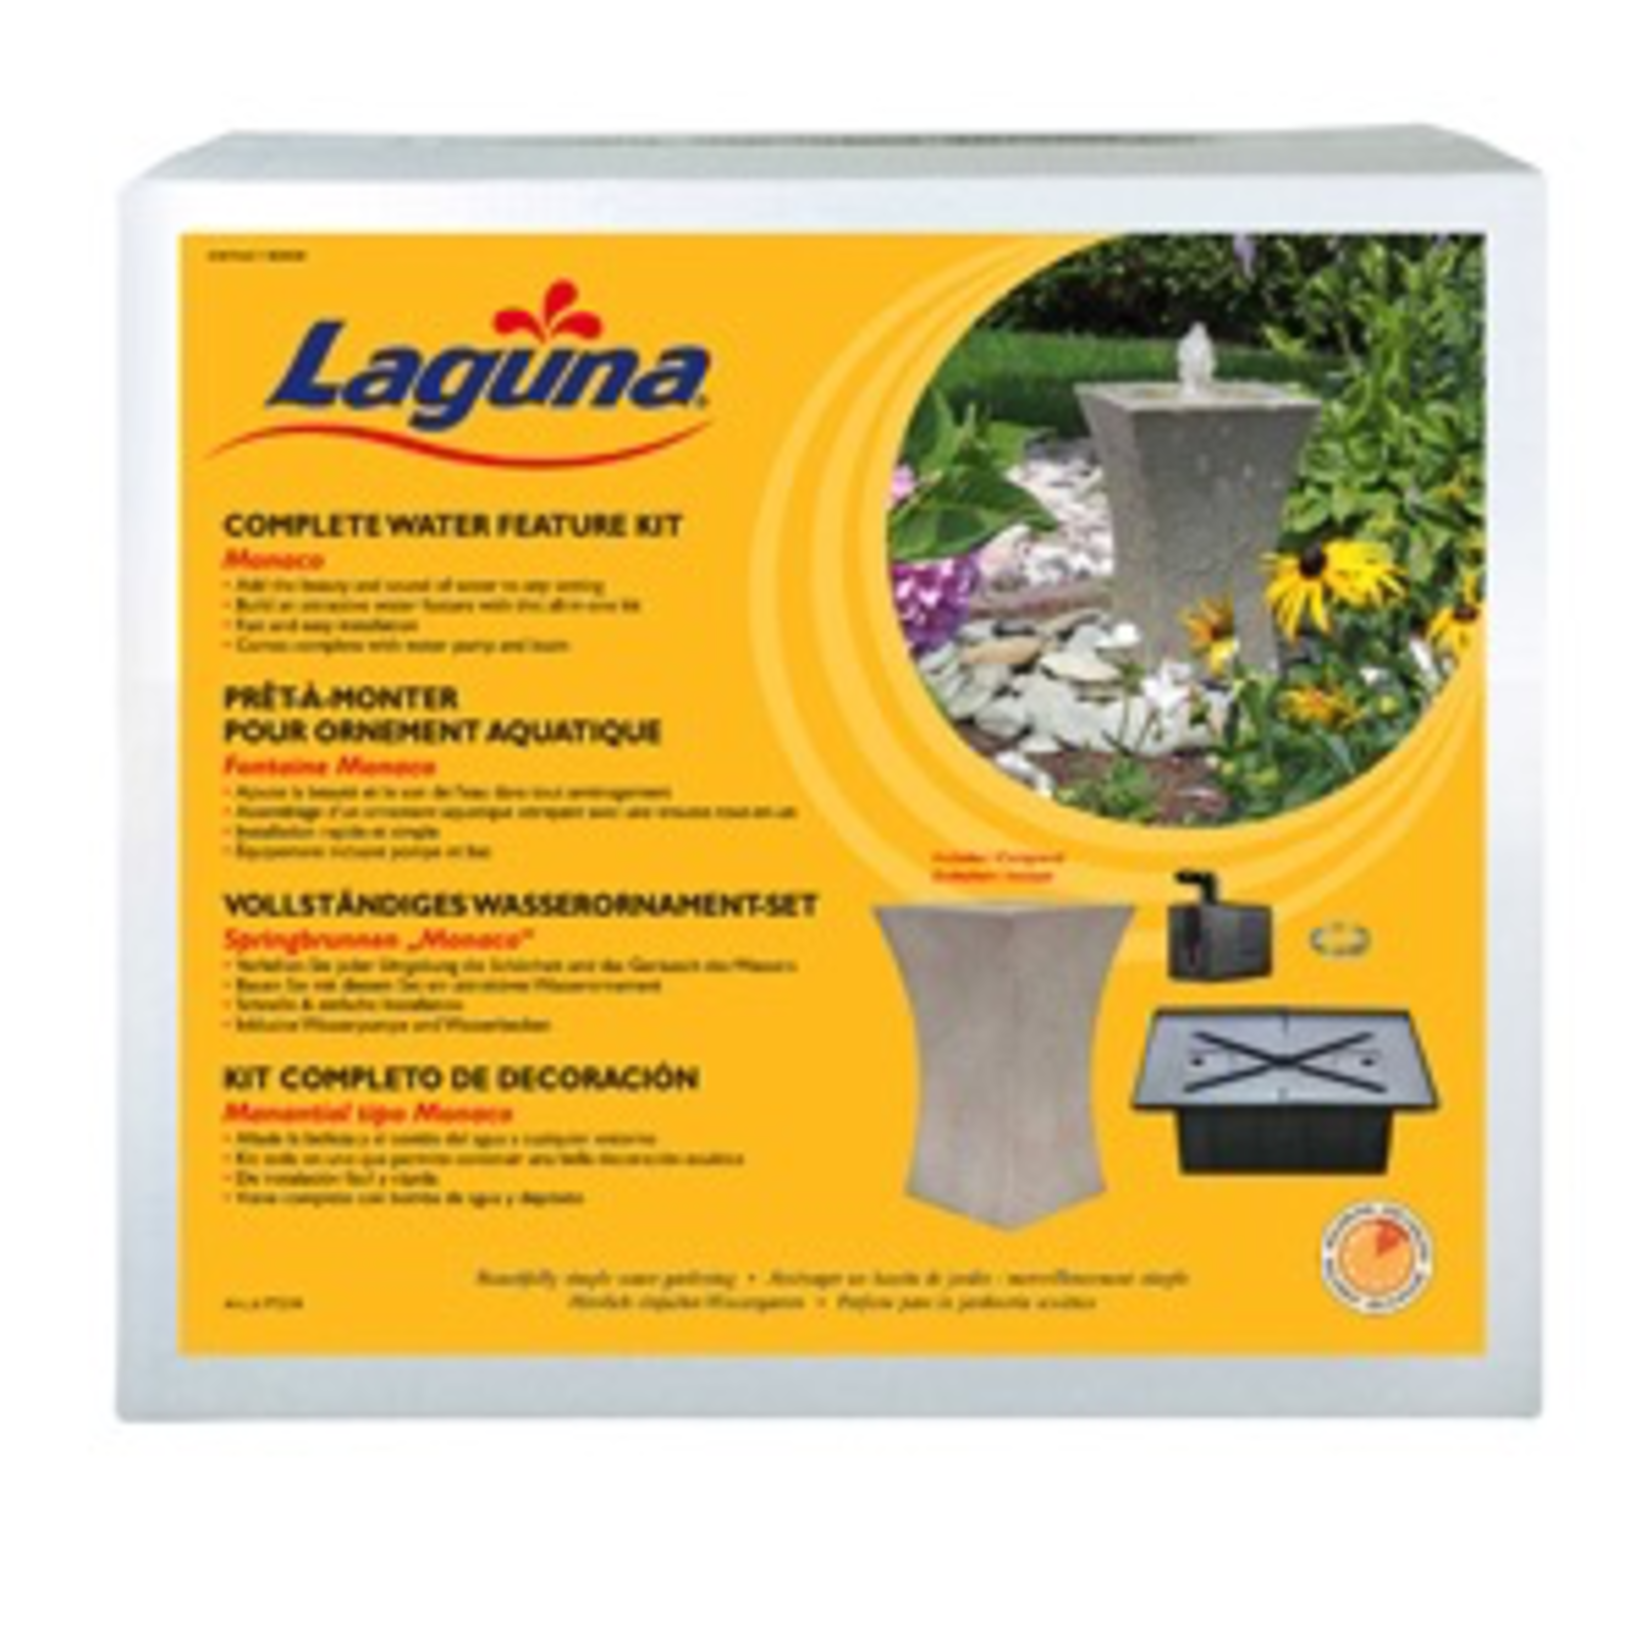 LAGUNA (D) Complete Water Feature Kit - Monaco - 10.6" x 16.14" (27 cm x 41 cm) (LC)